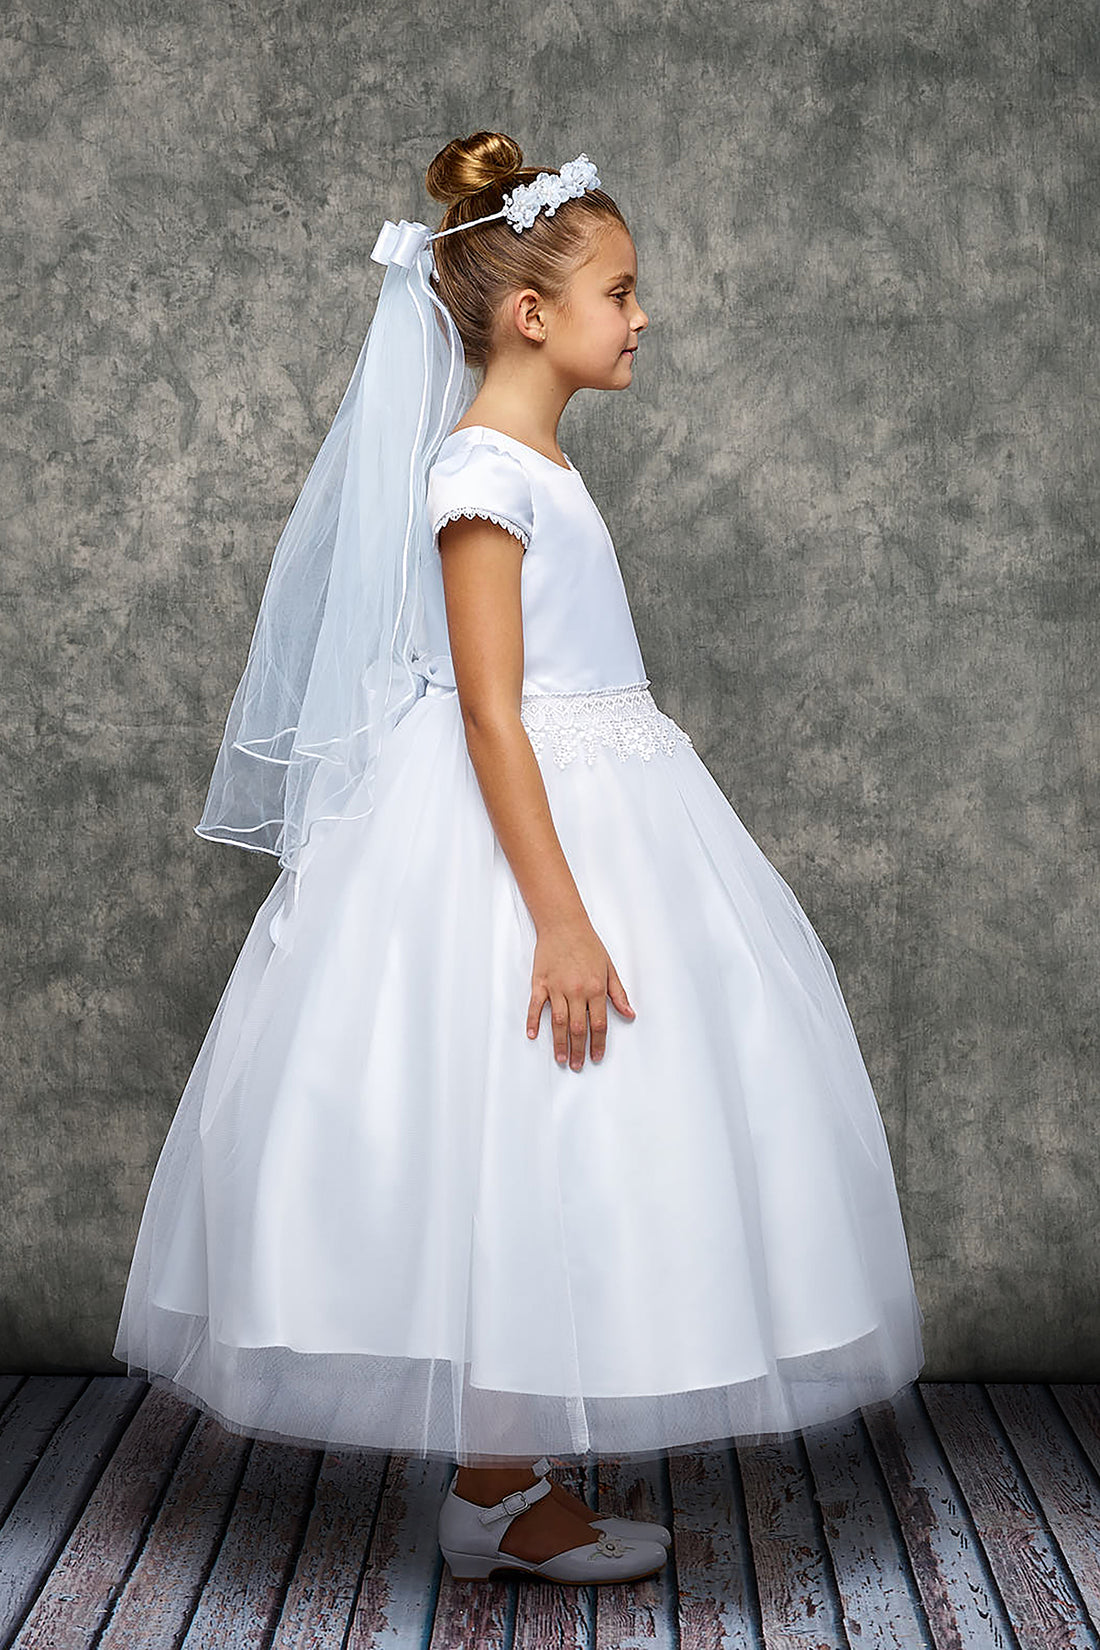 Chandelier Trim Communion Flower Girl Dress by AS460 Kids Dream - Girl Formal Dresses